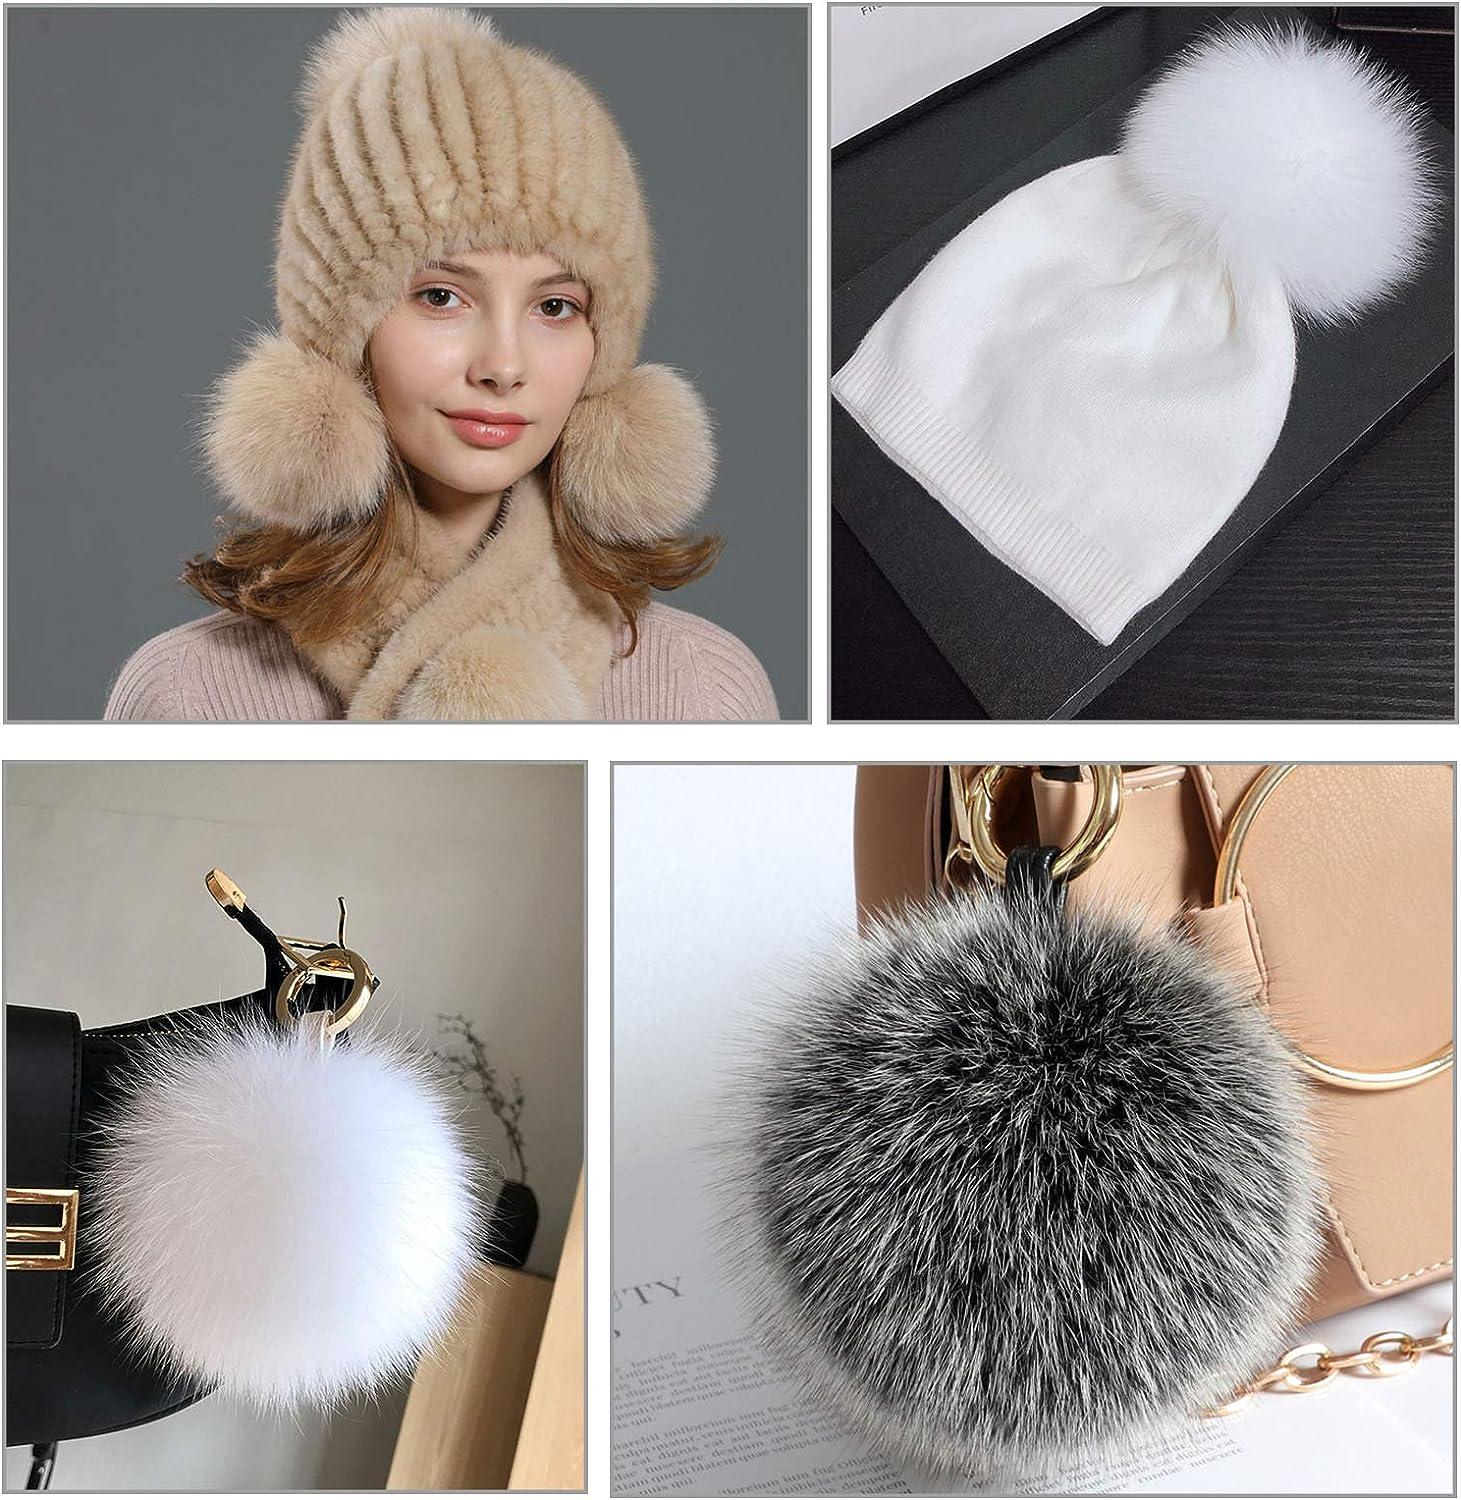 Faux Fur Pompoms for Hats, Scarves, Key Chains / 25 mm / Beige - 2 pieces